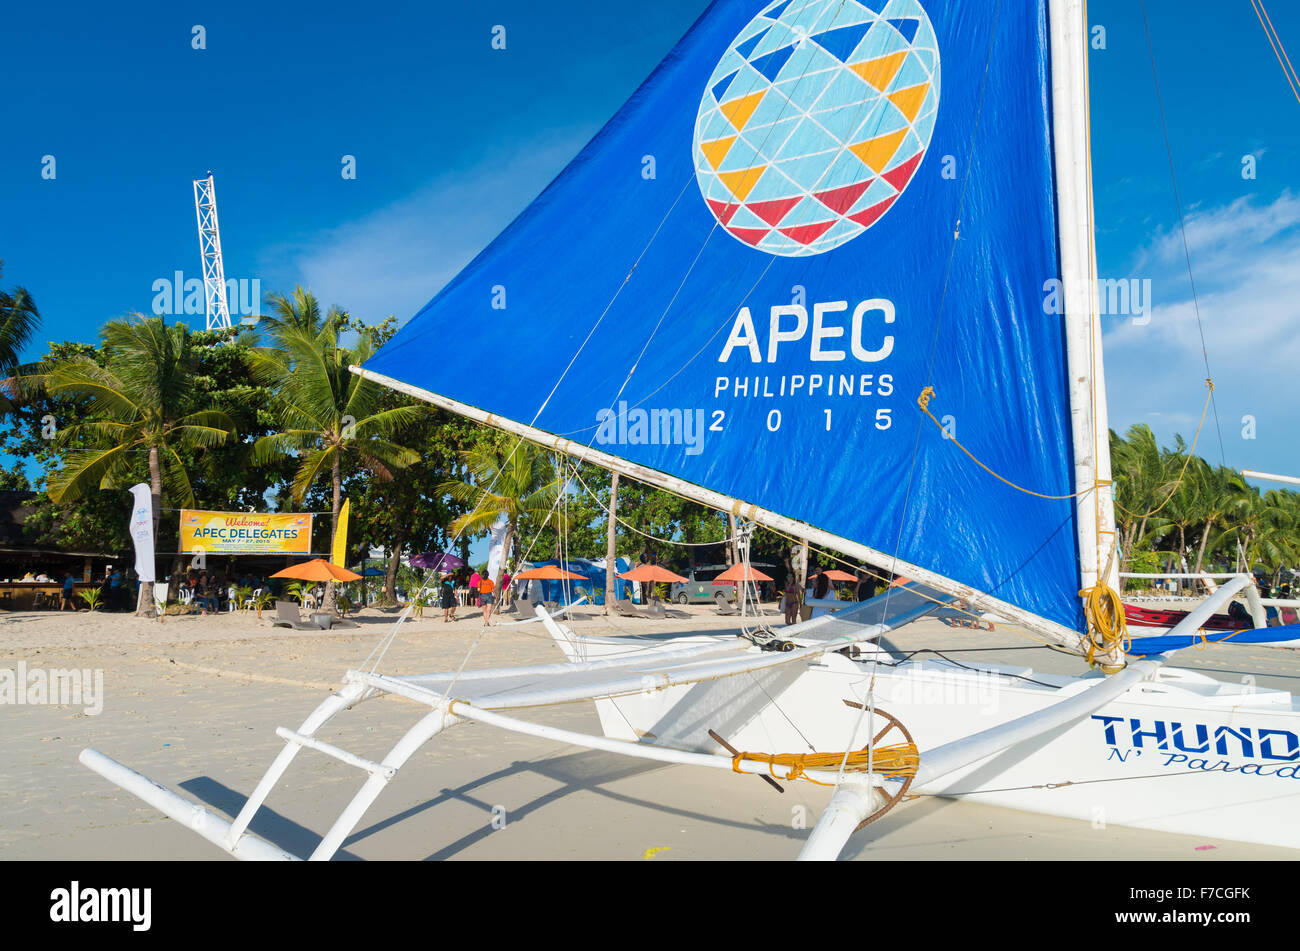 BORACAY, PHILIPPINES - 20 MAI 2015 : Bateau à voile avec l'APEC la voile. La coopération économique Asie-Pacifique (APEC) est un forum pour les CIP 21 Banque D'Images